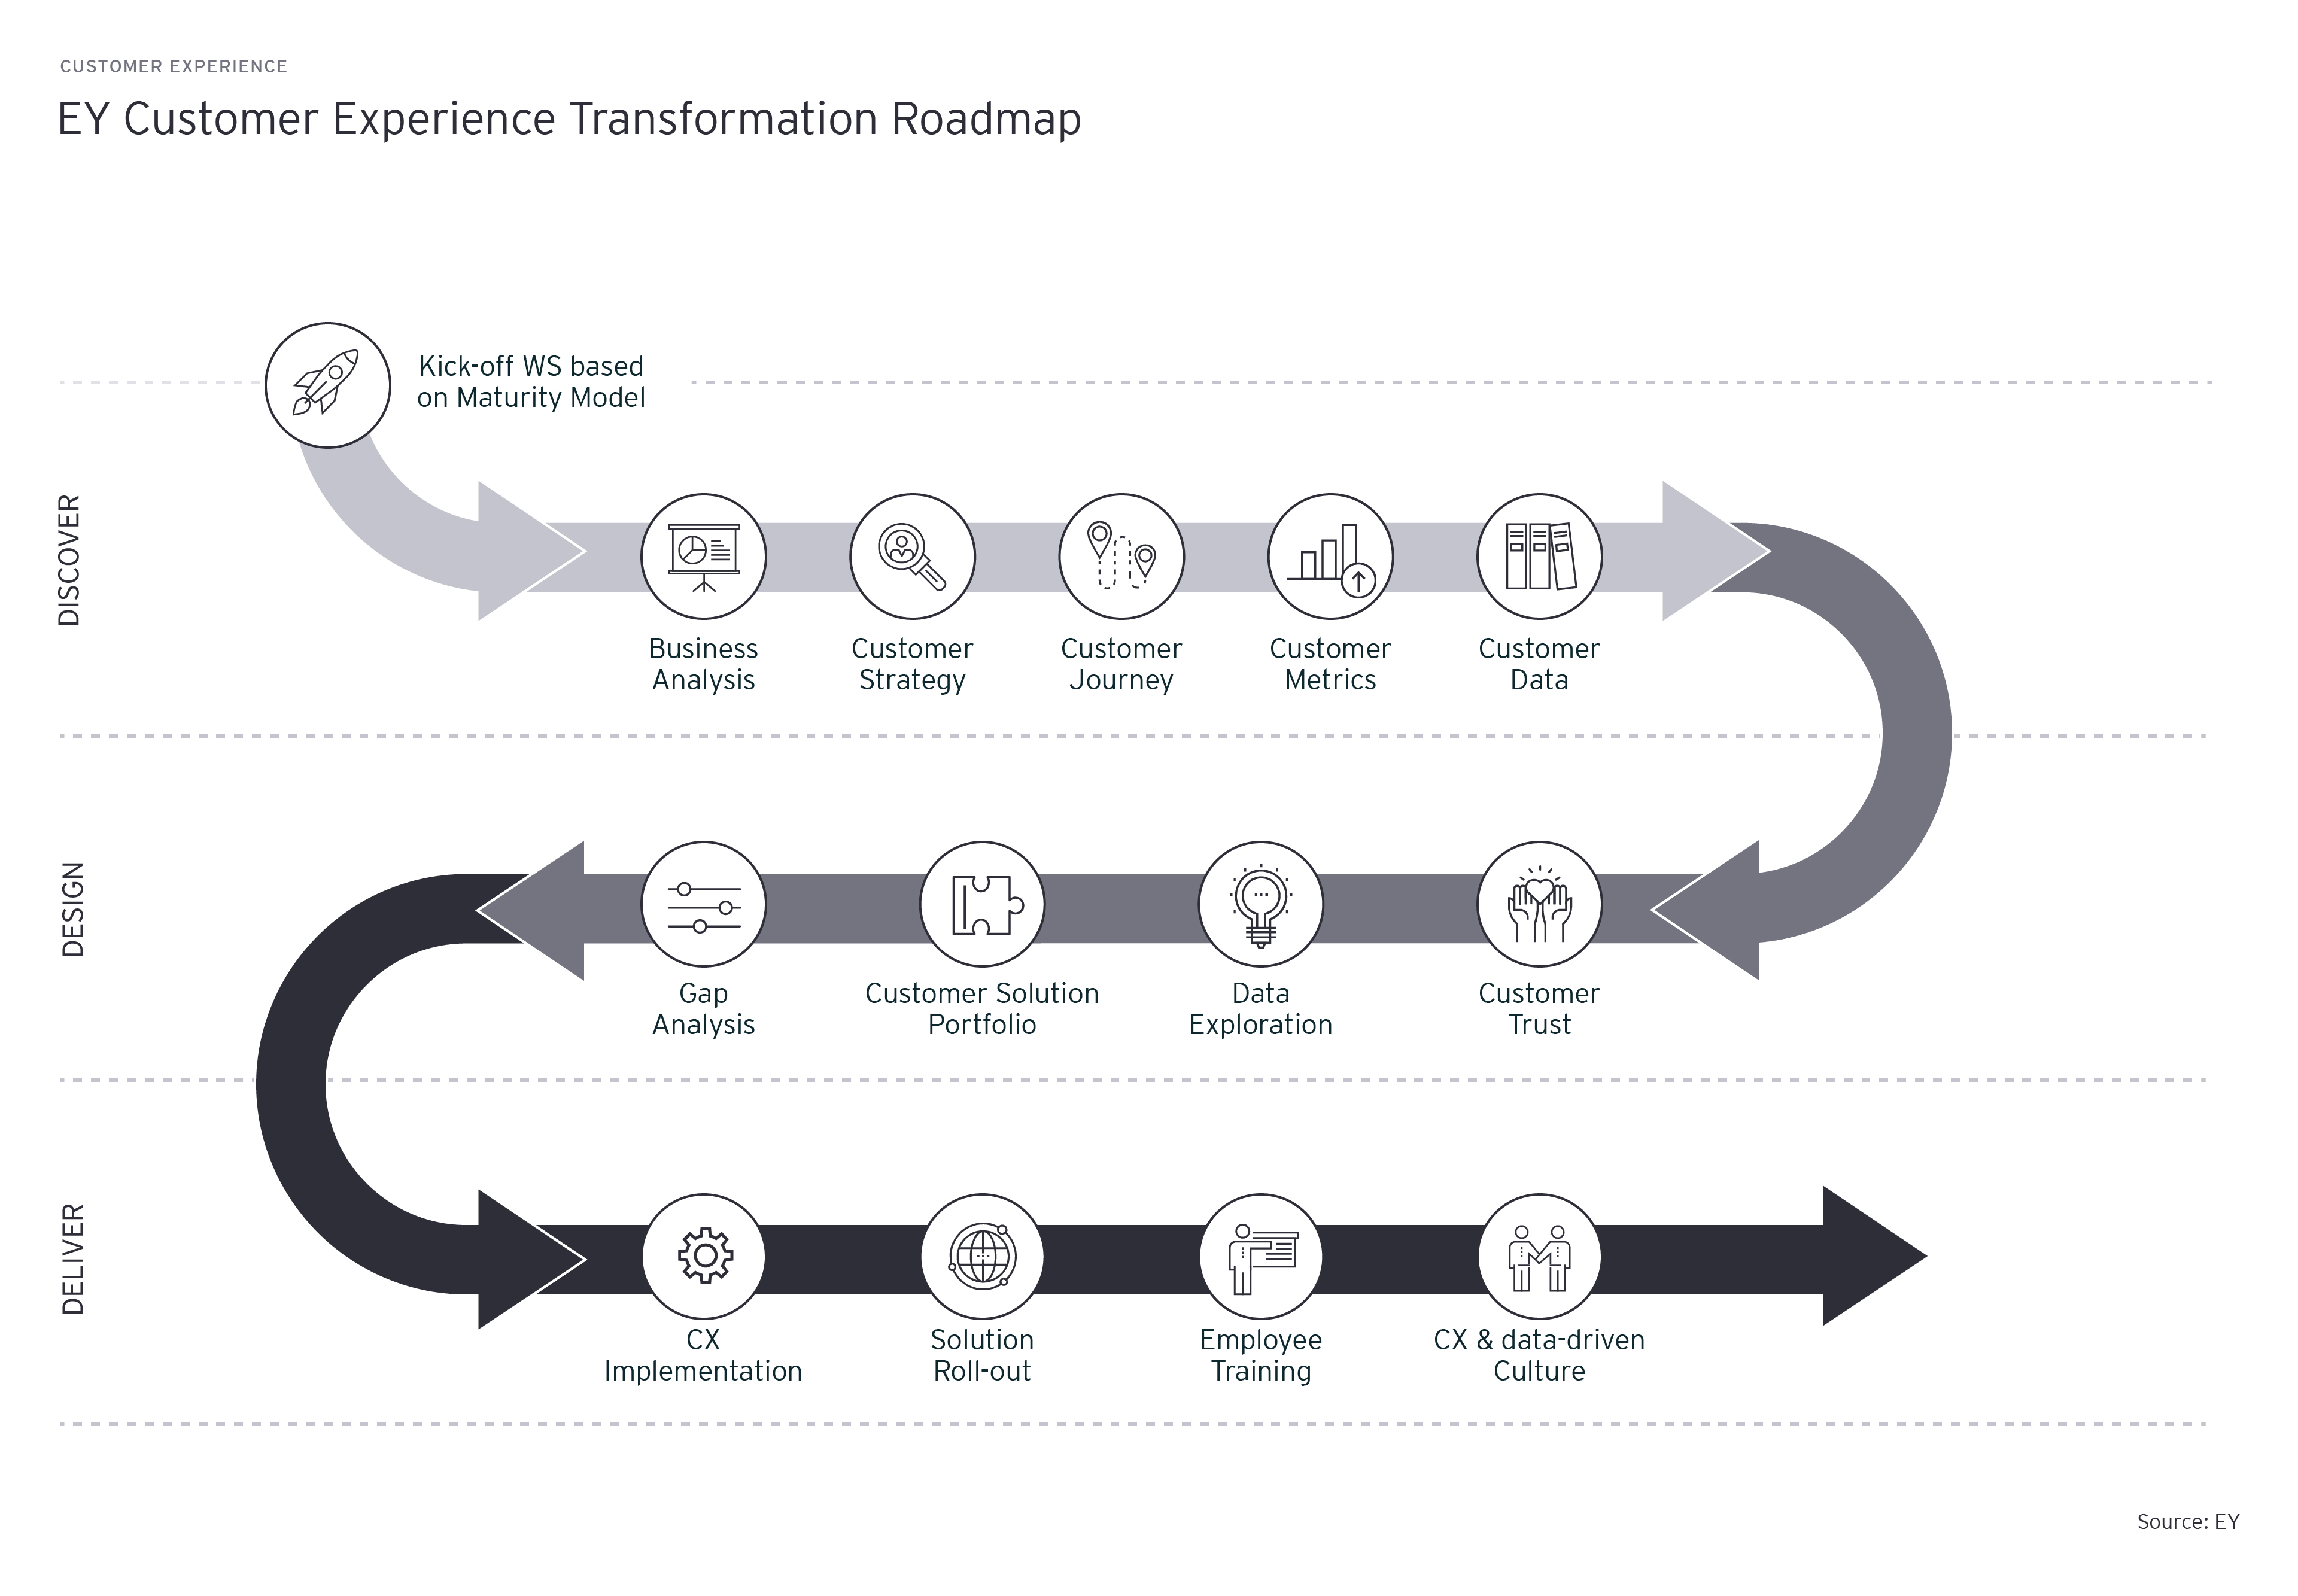 Customer Experience Transformation Roadmap von EY